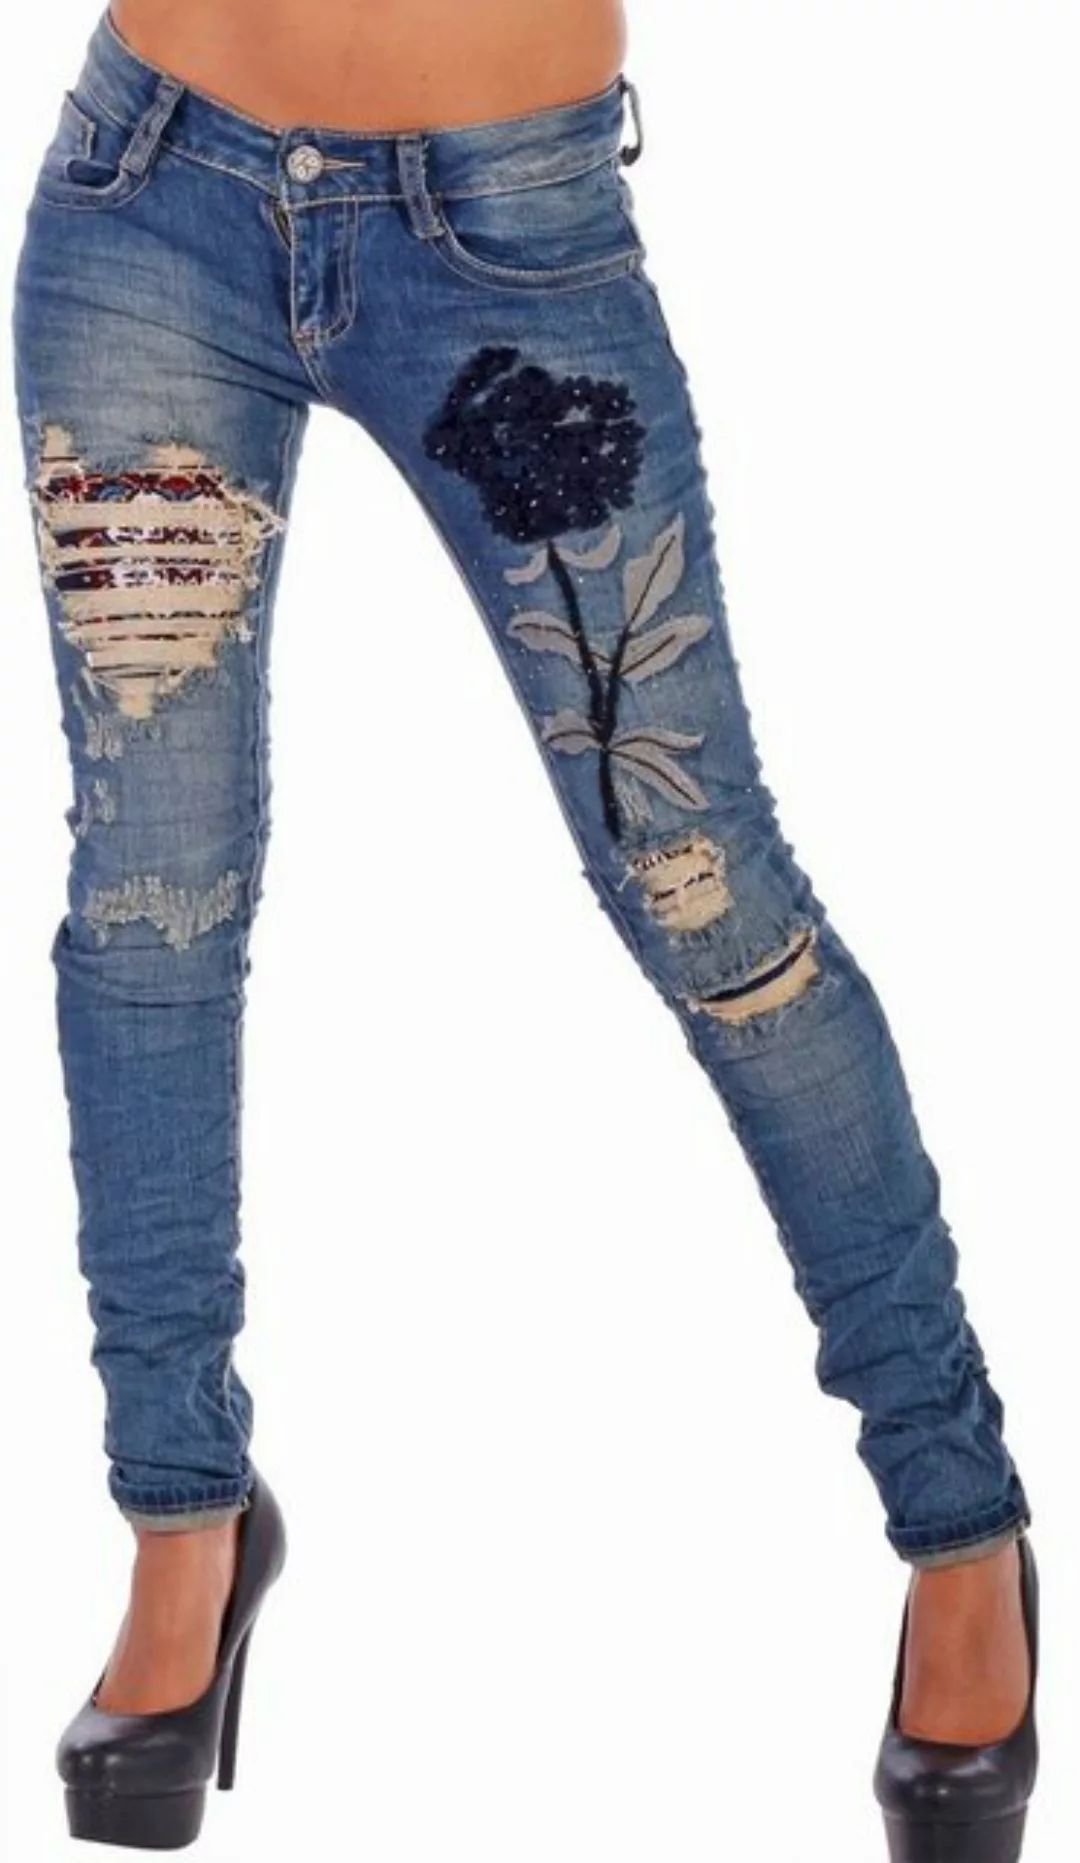 Charis Moda Röhrenjeans Skinny Jeans destroyed mit vielen Applikationen günstig online kaufen